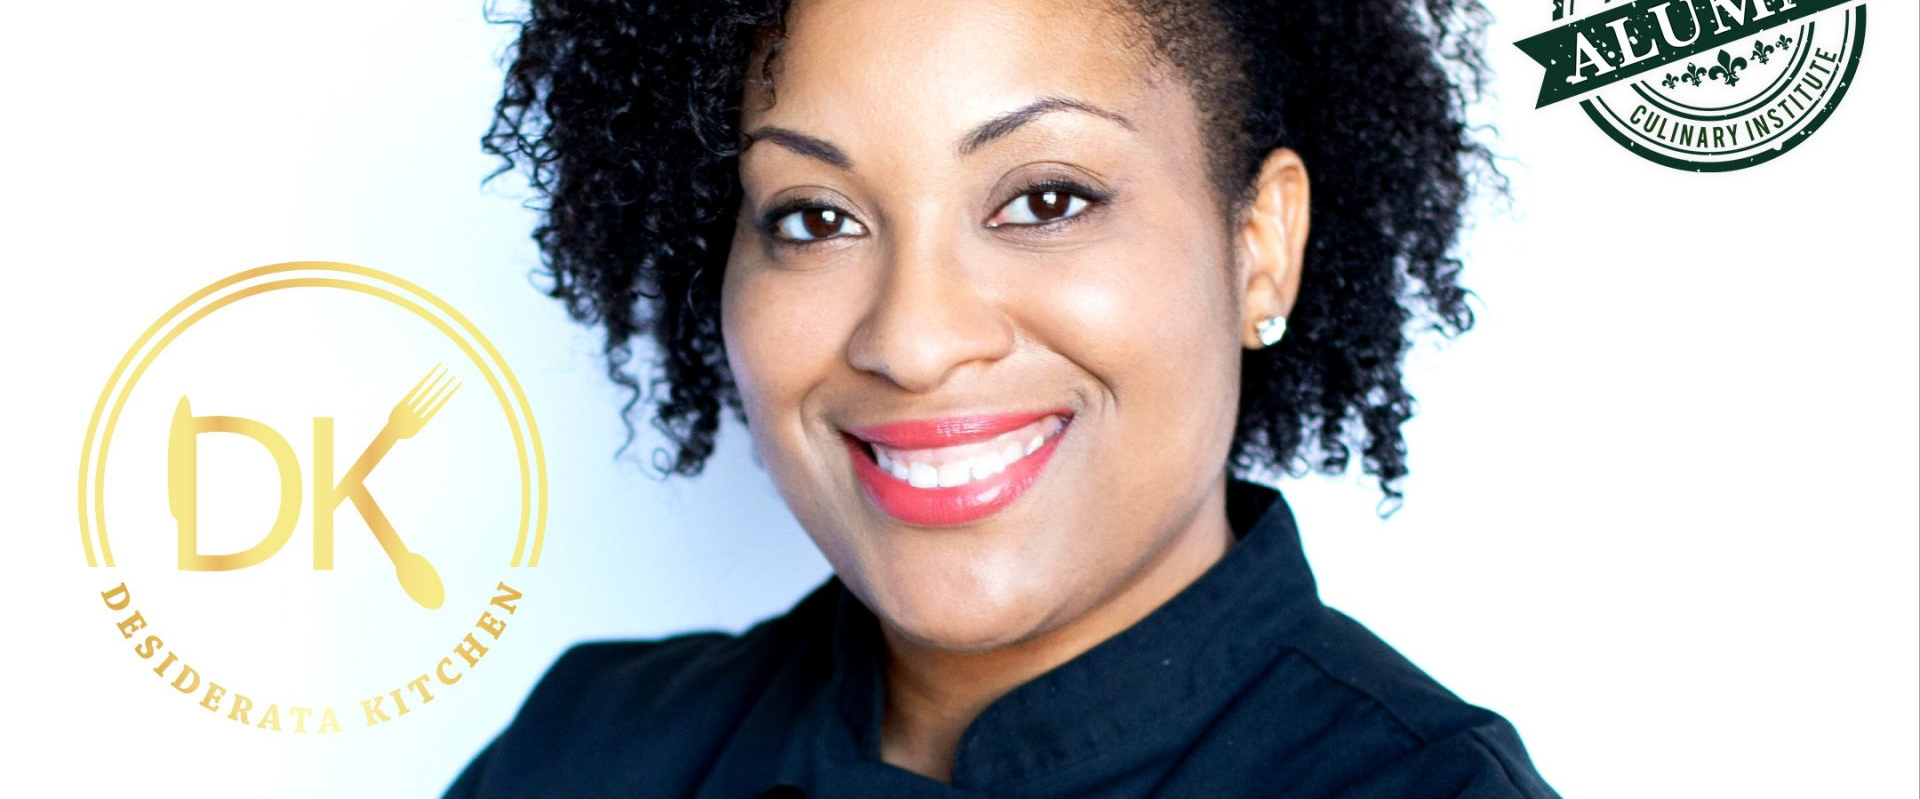 Alumni Spotlight: LCI's Alum Chef Ciara Finley